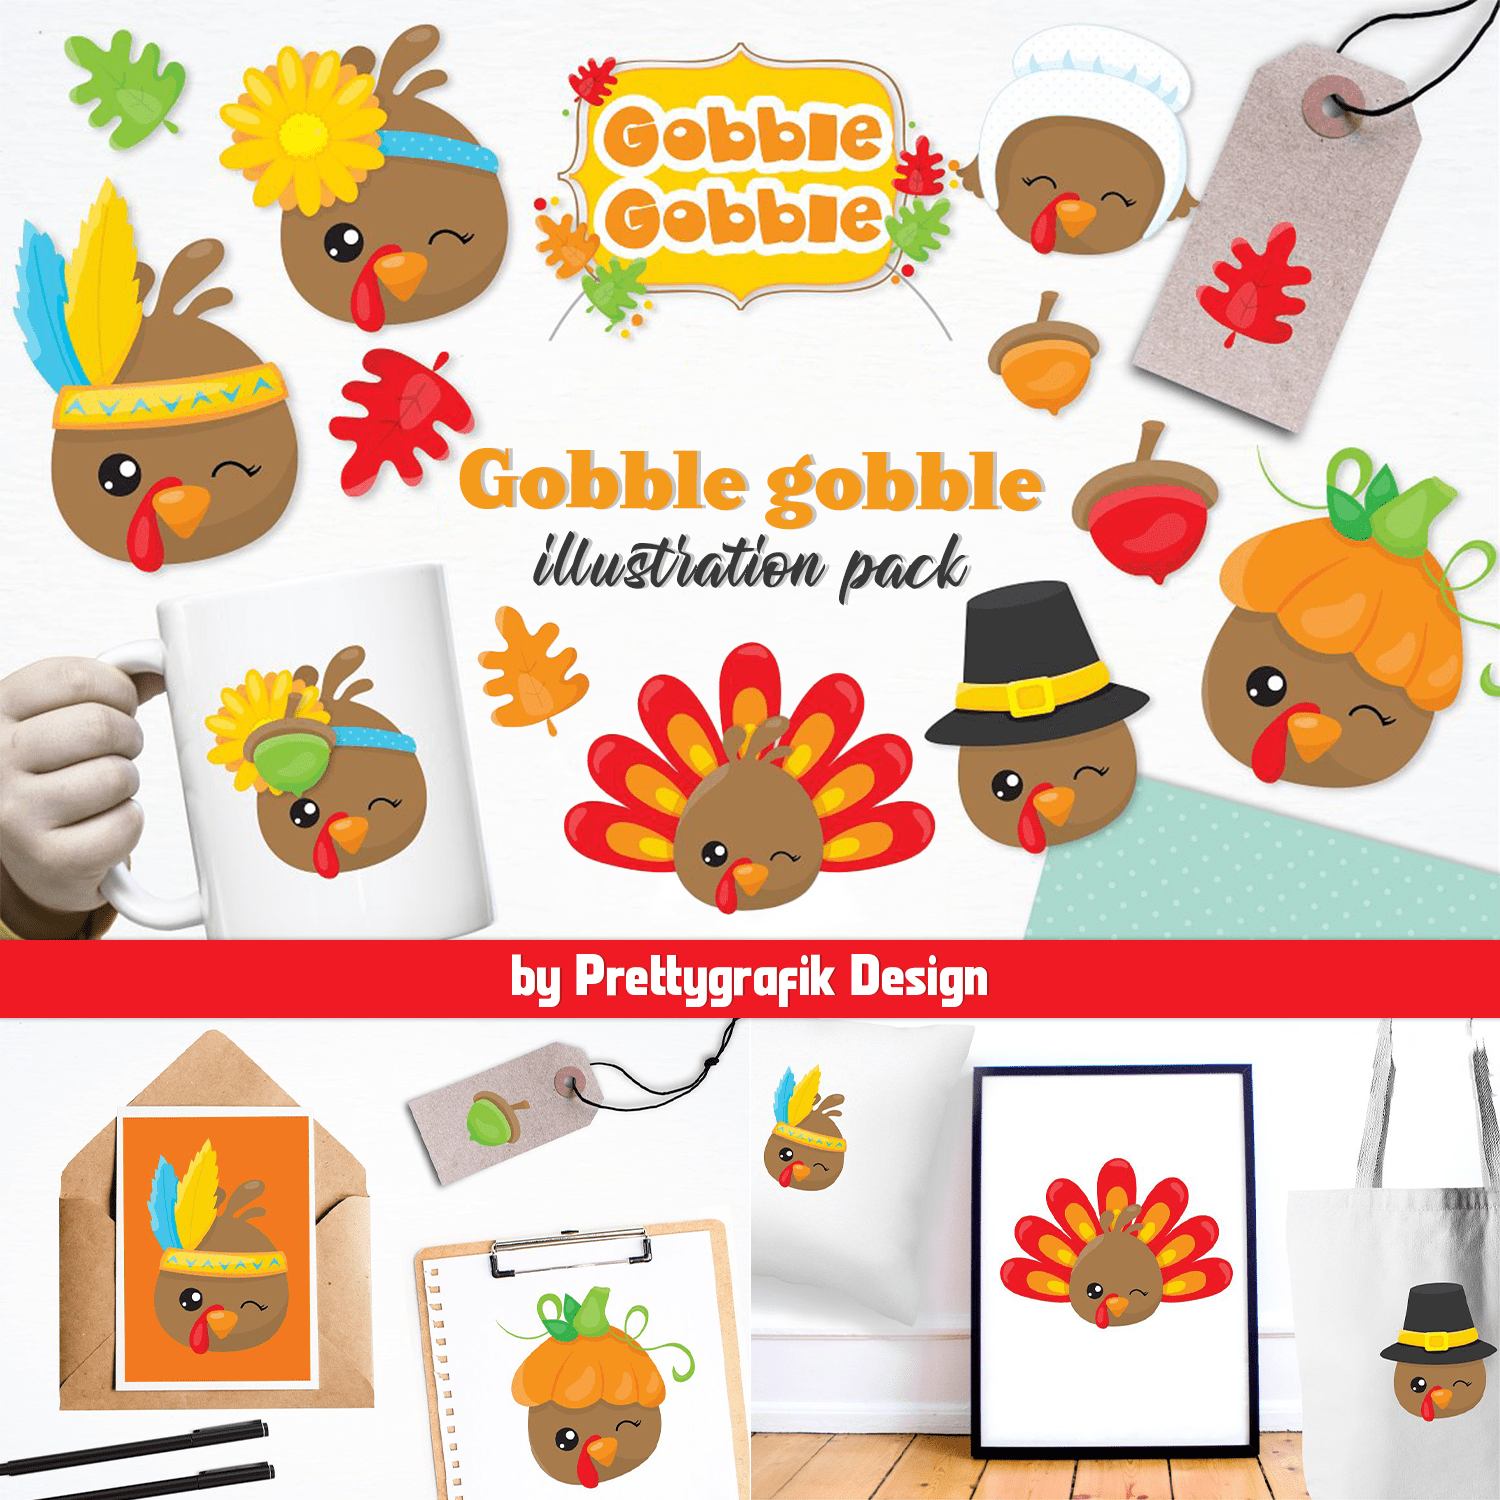 Gobble gobble illustration pack cover.